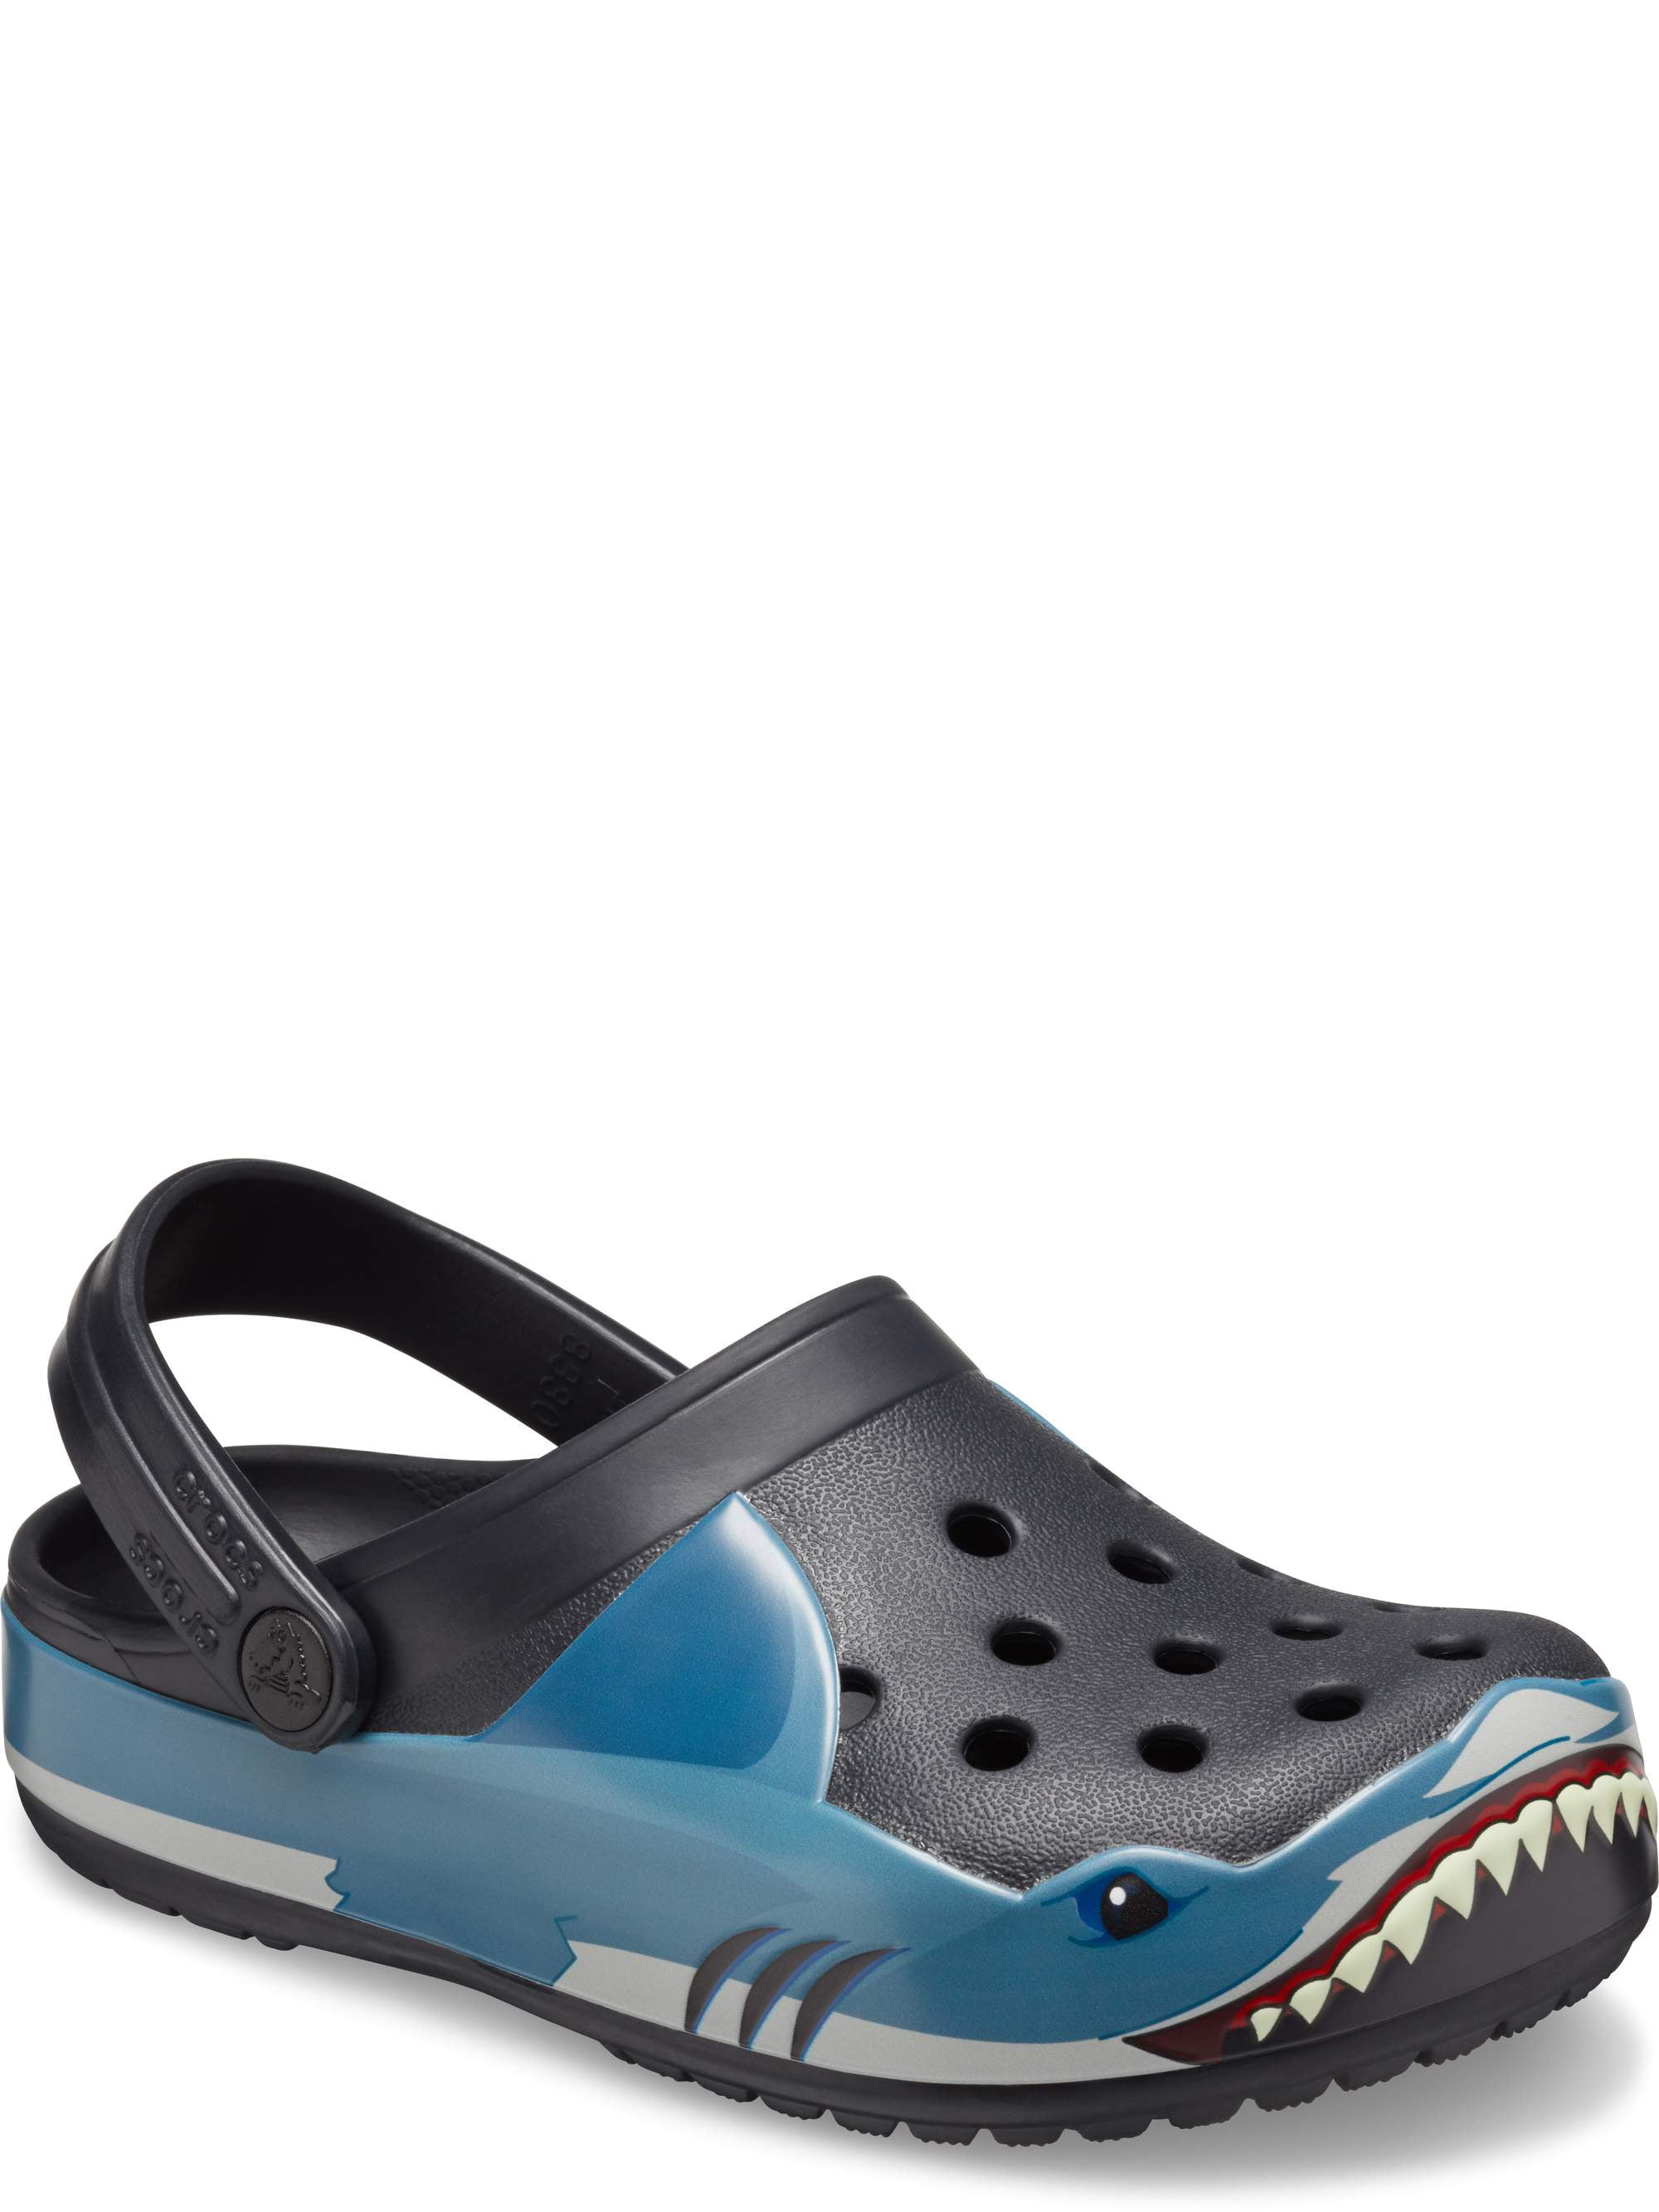 crocs shark sandals